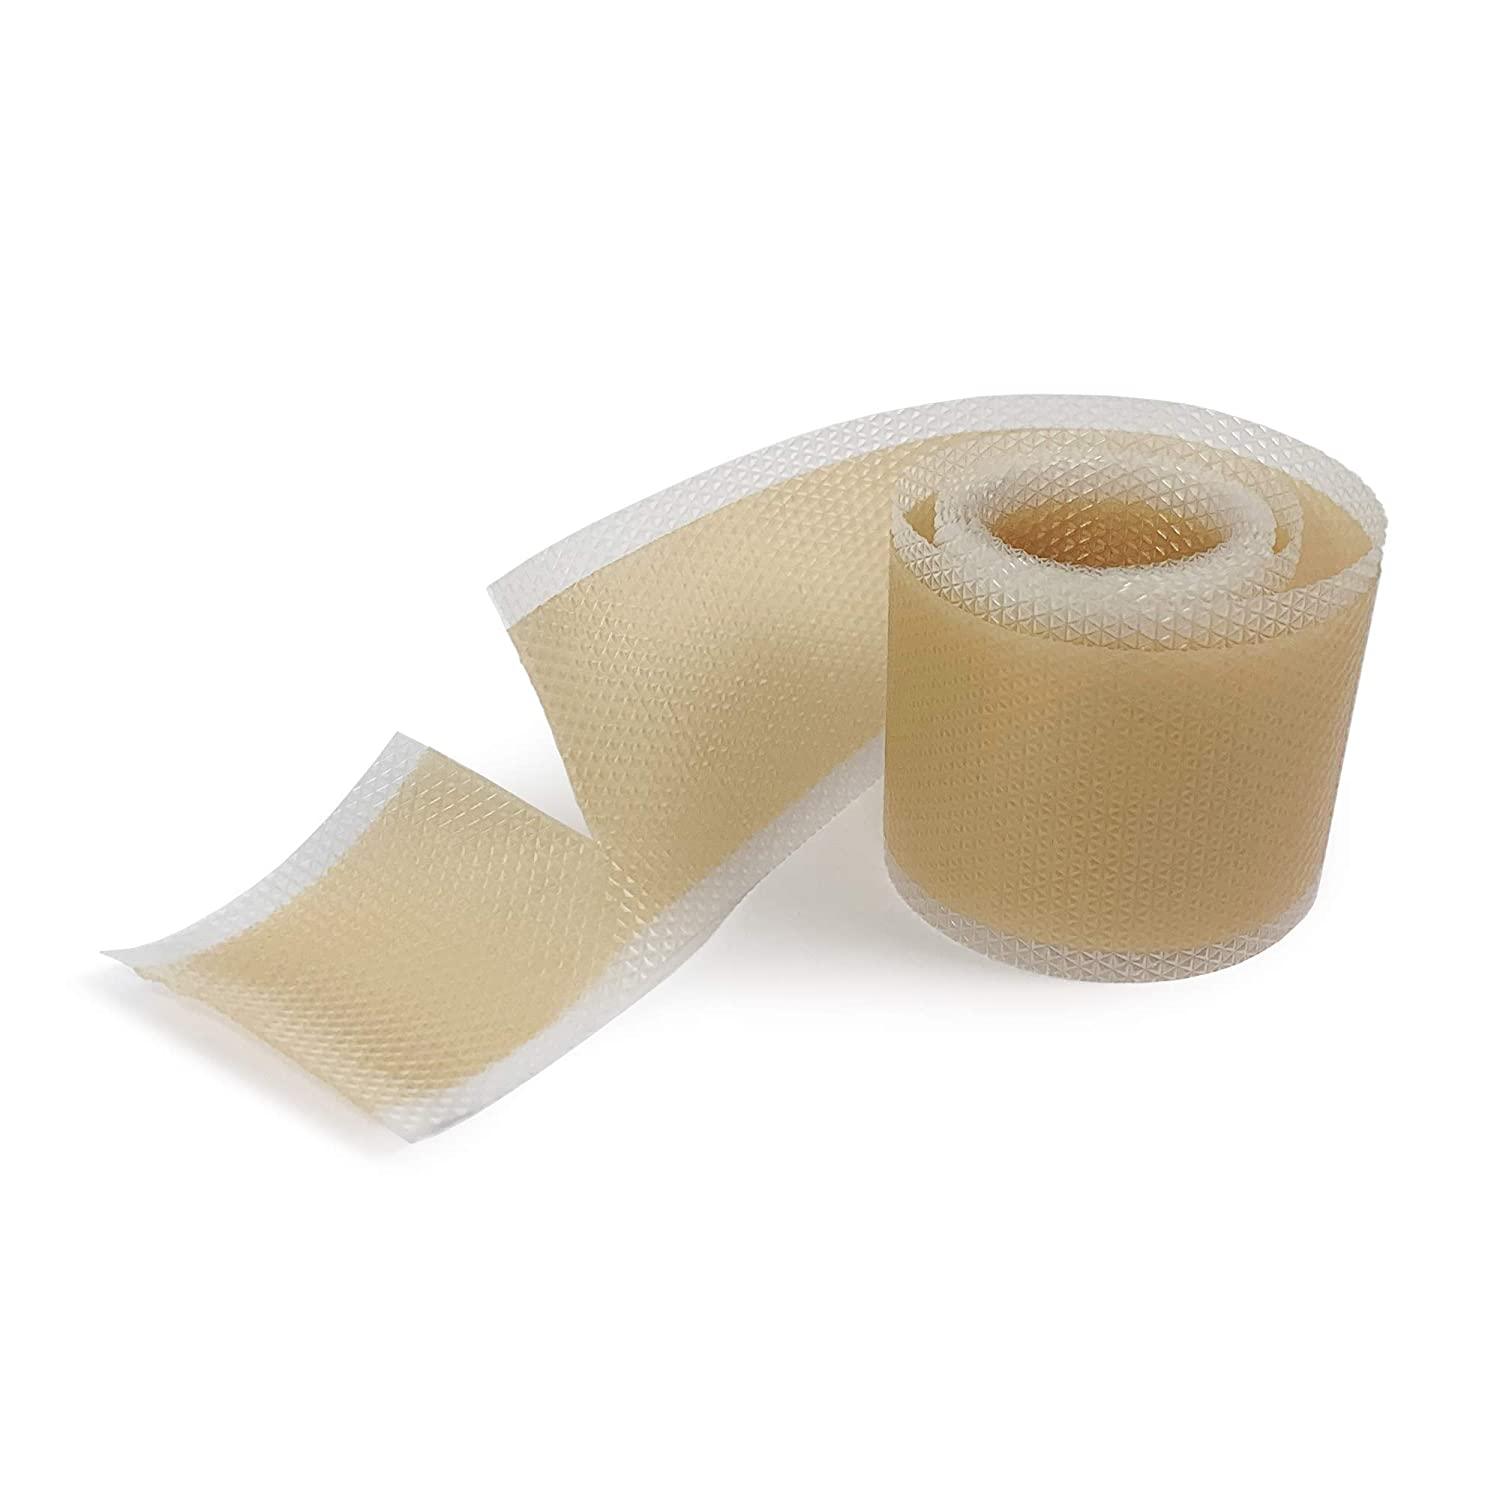 Waterproof Tape, Bandage Tape Rolls, 1 x 5 yd, case/210